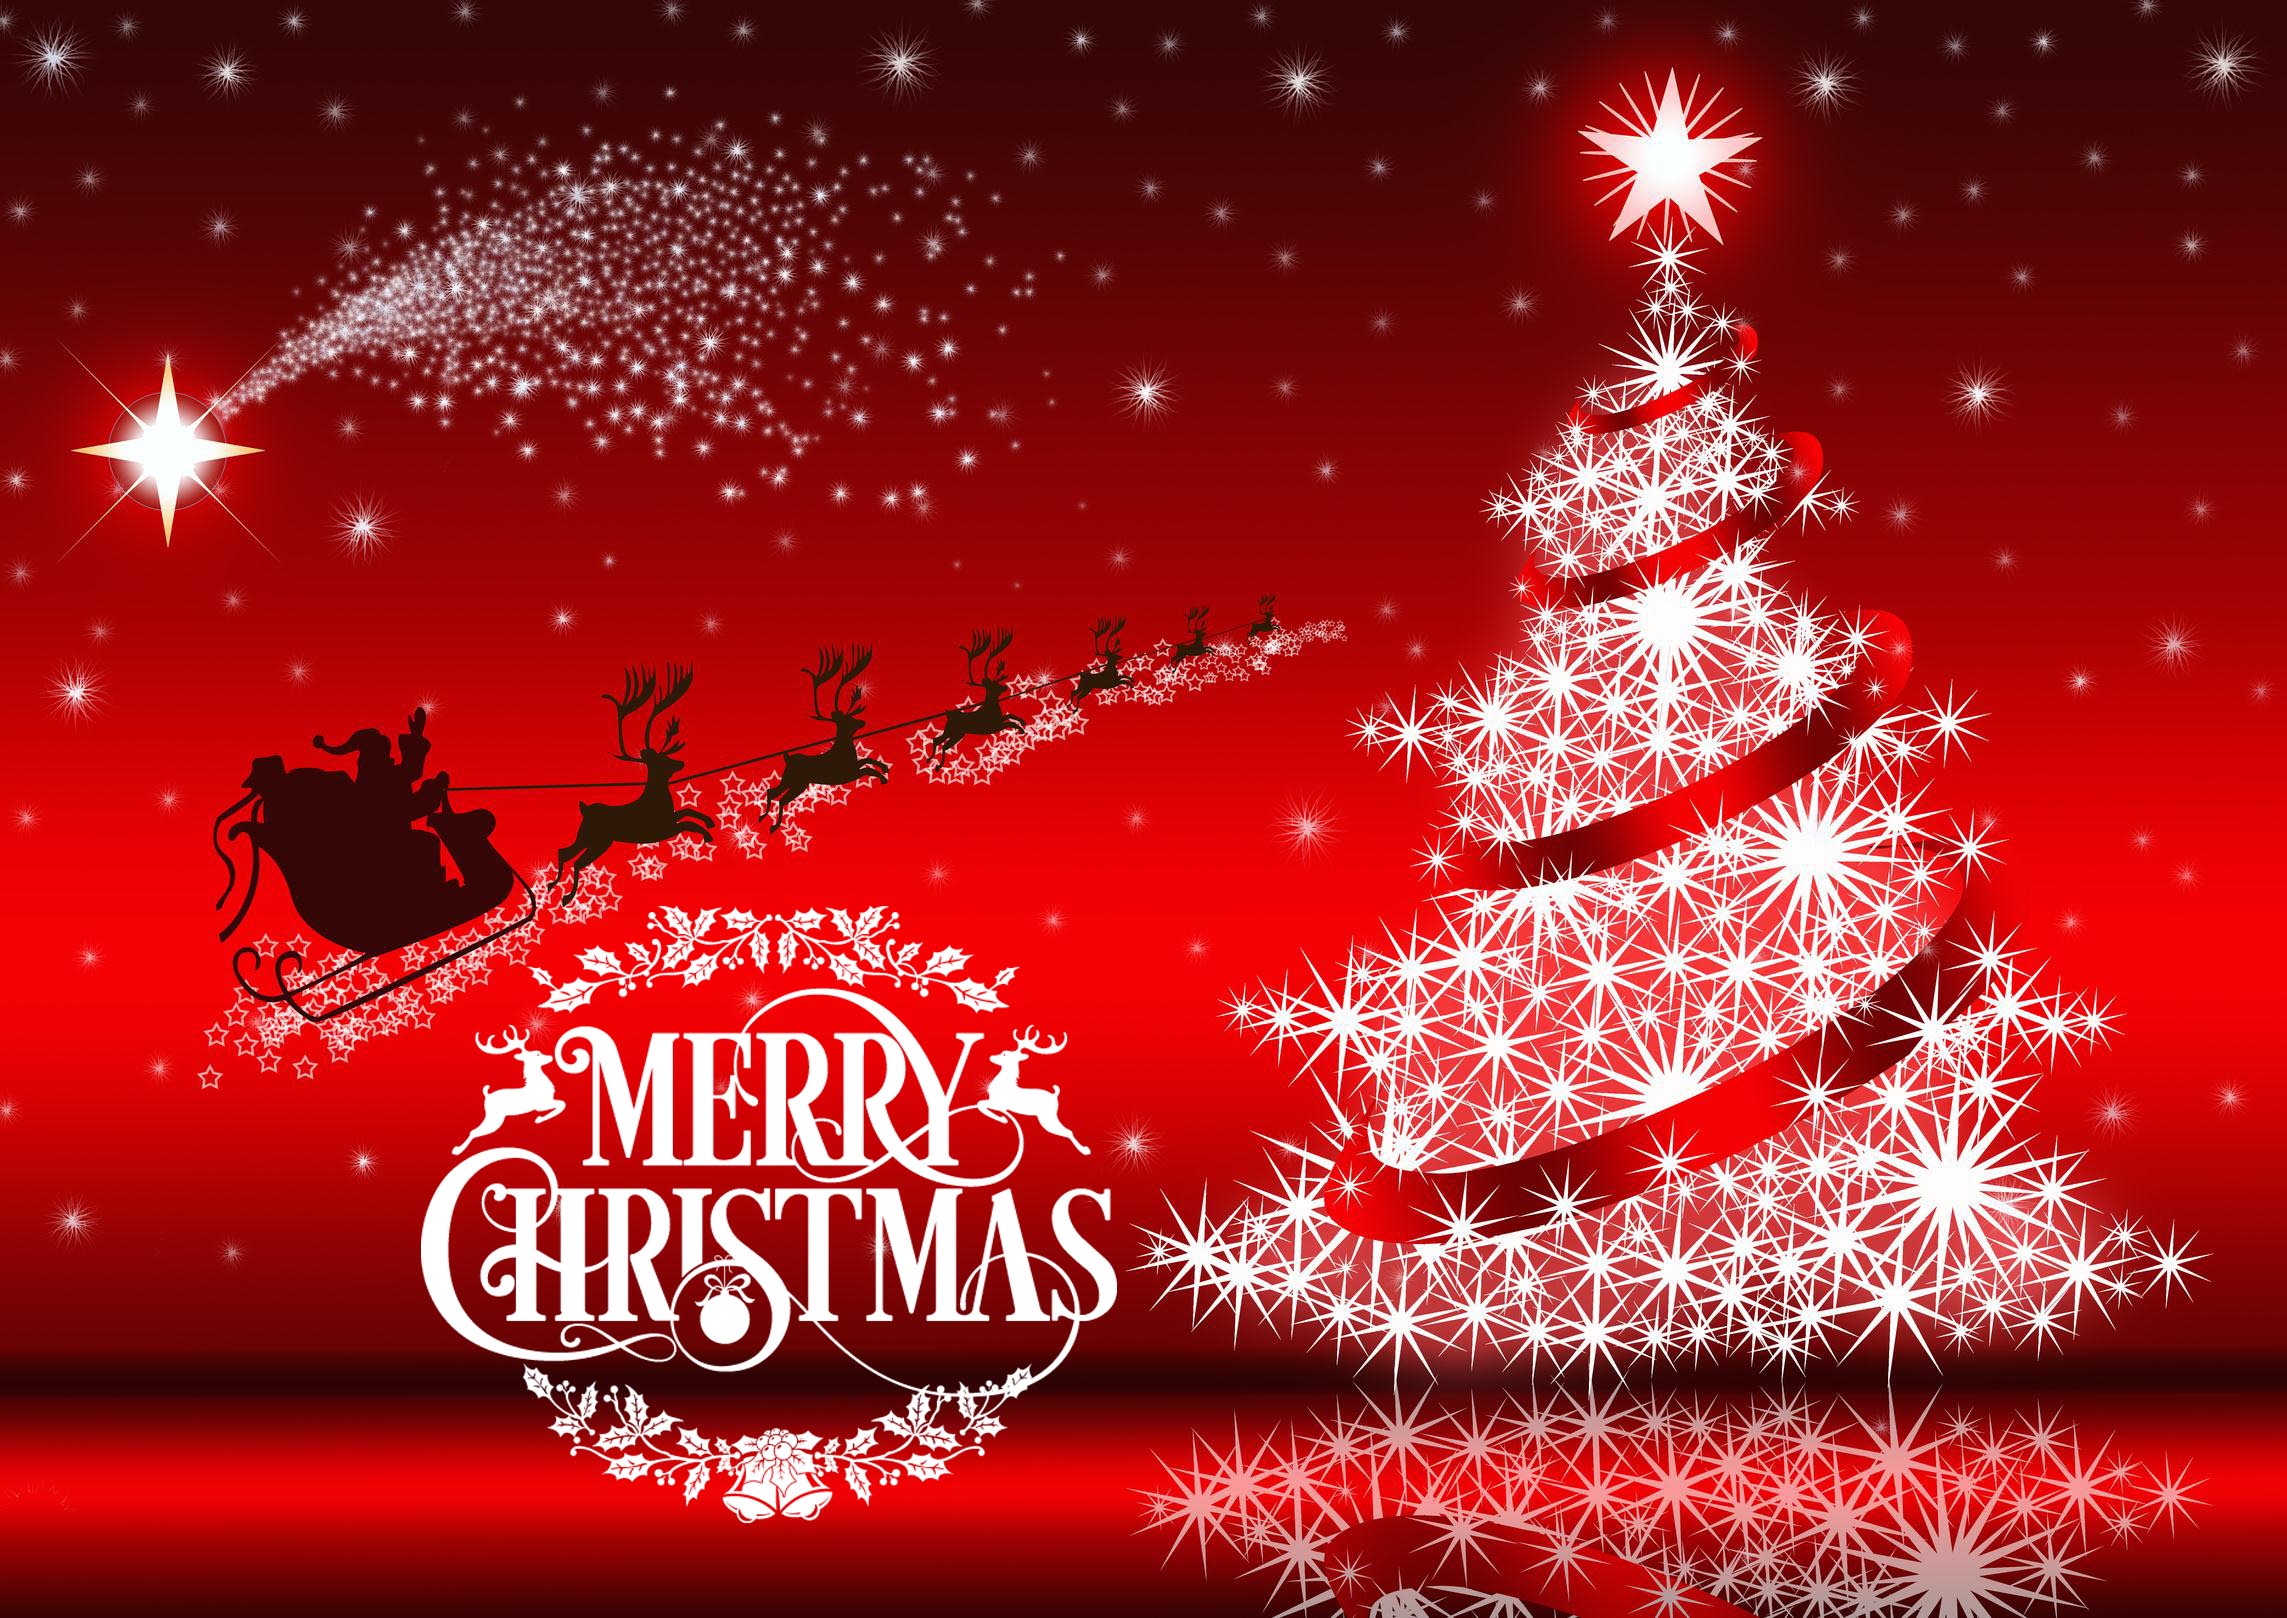 クリスマス願い壁紙,クリスマスの飾り,テキスト,クリスマスツリー,クリスマス・イブ,f te